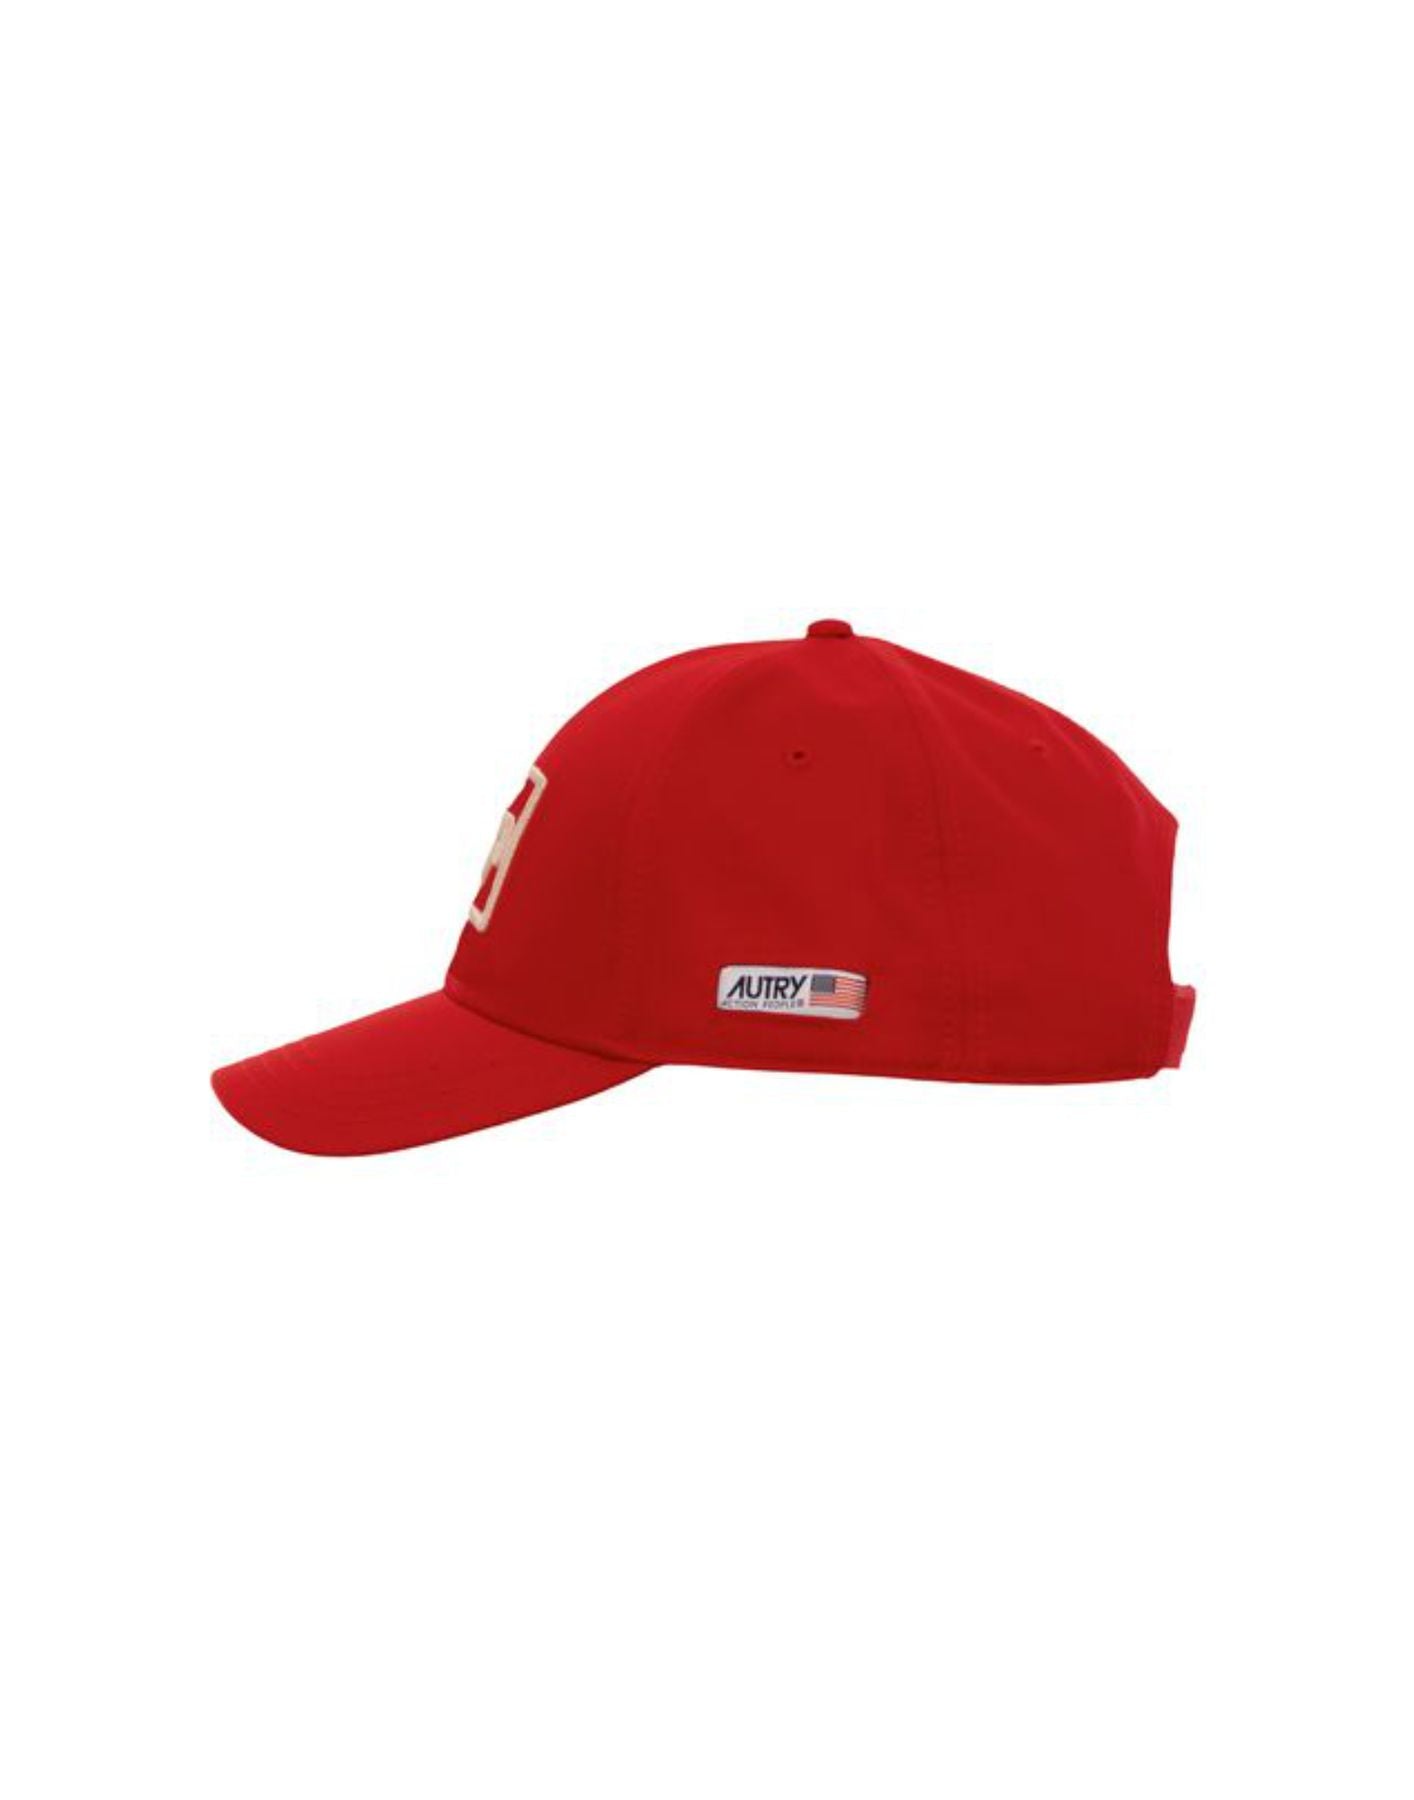 Hat unisex ACIU 470R RED Autry